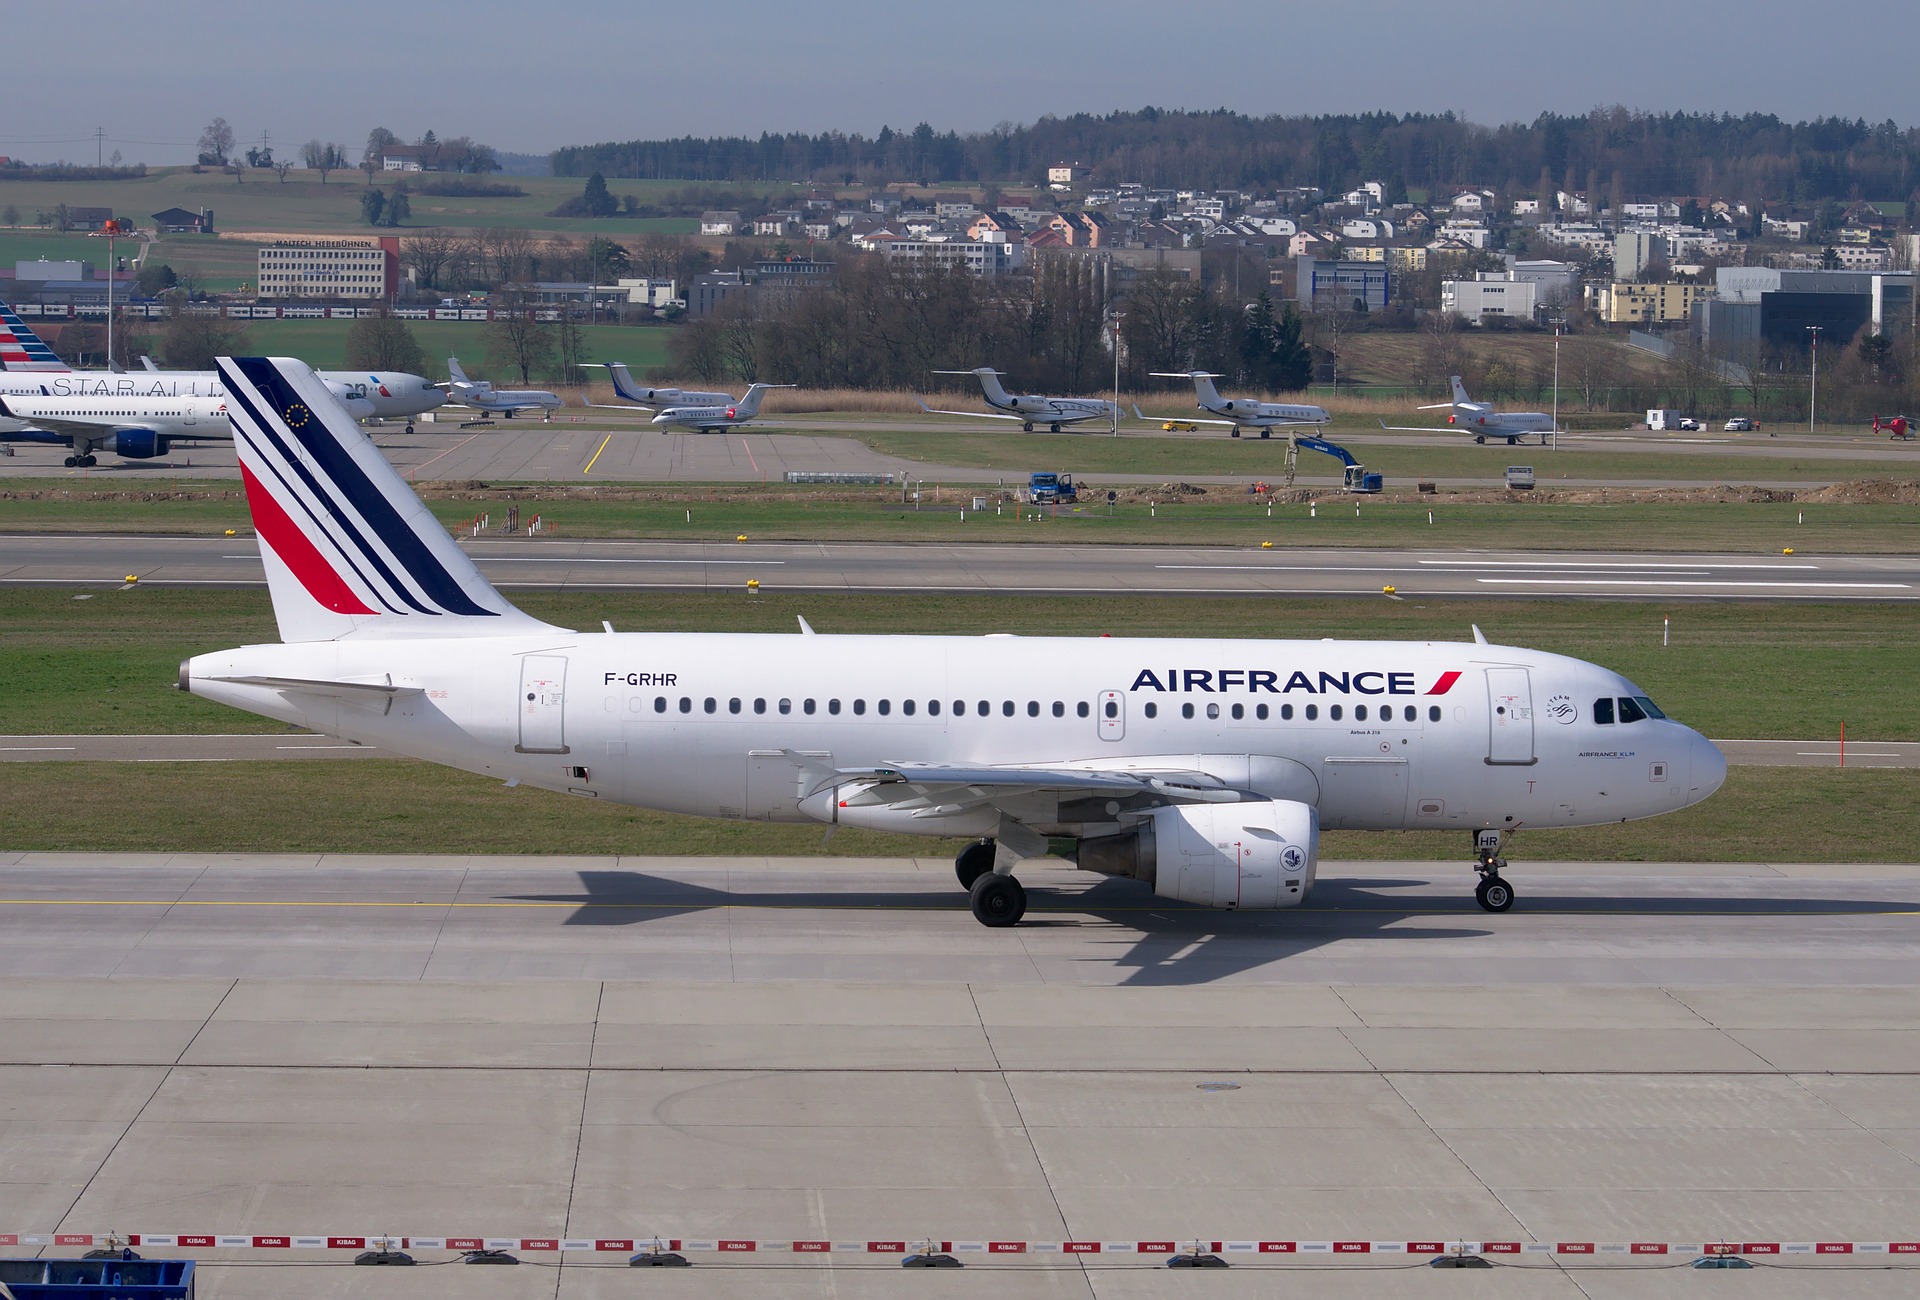 Tízéves megállapodást kötött zöld üzemanyag vásárlásáról az Air France-KLM Csoport és a TotalEnergies